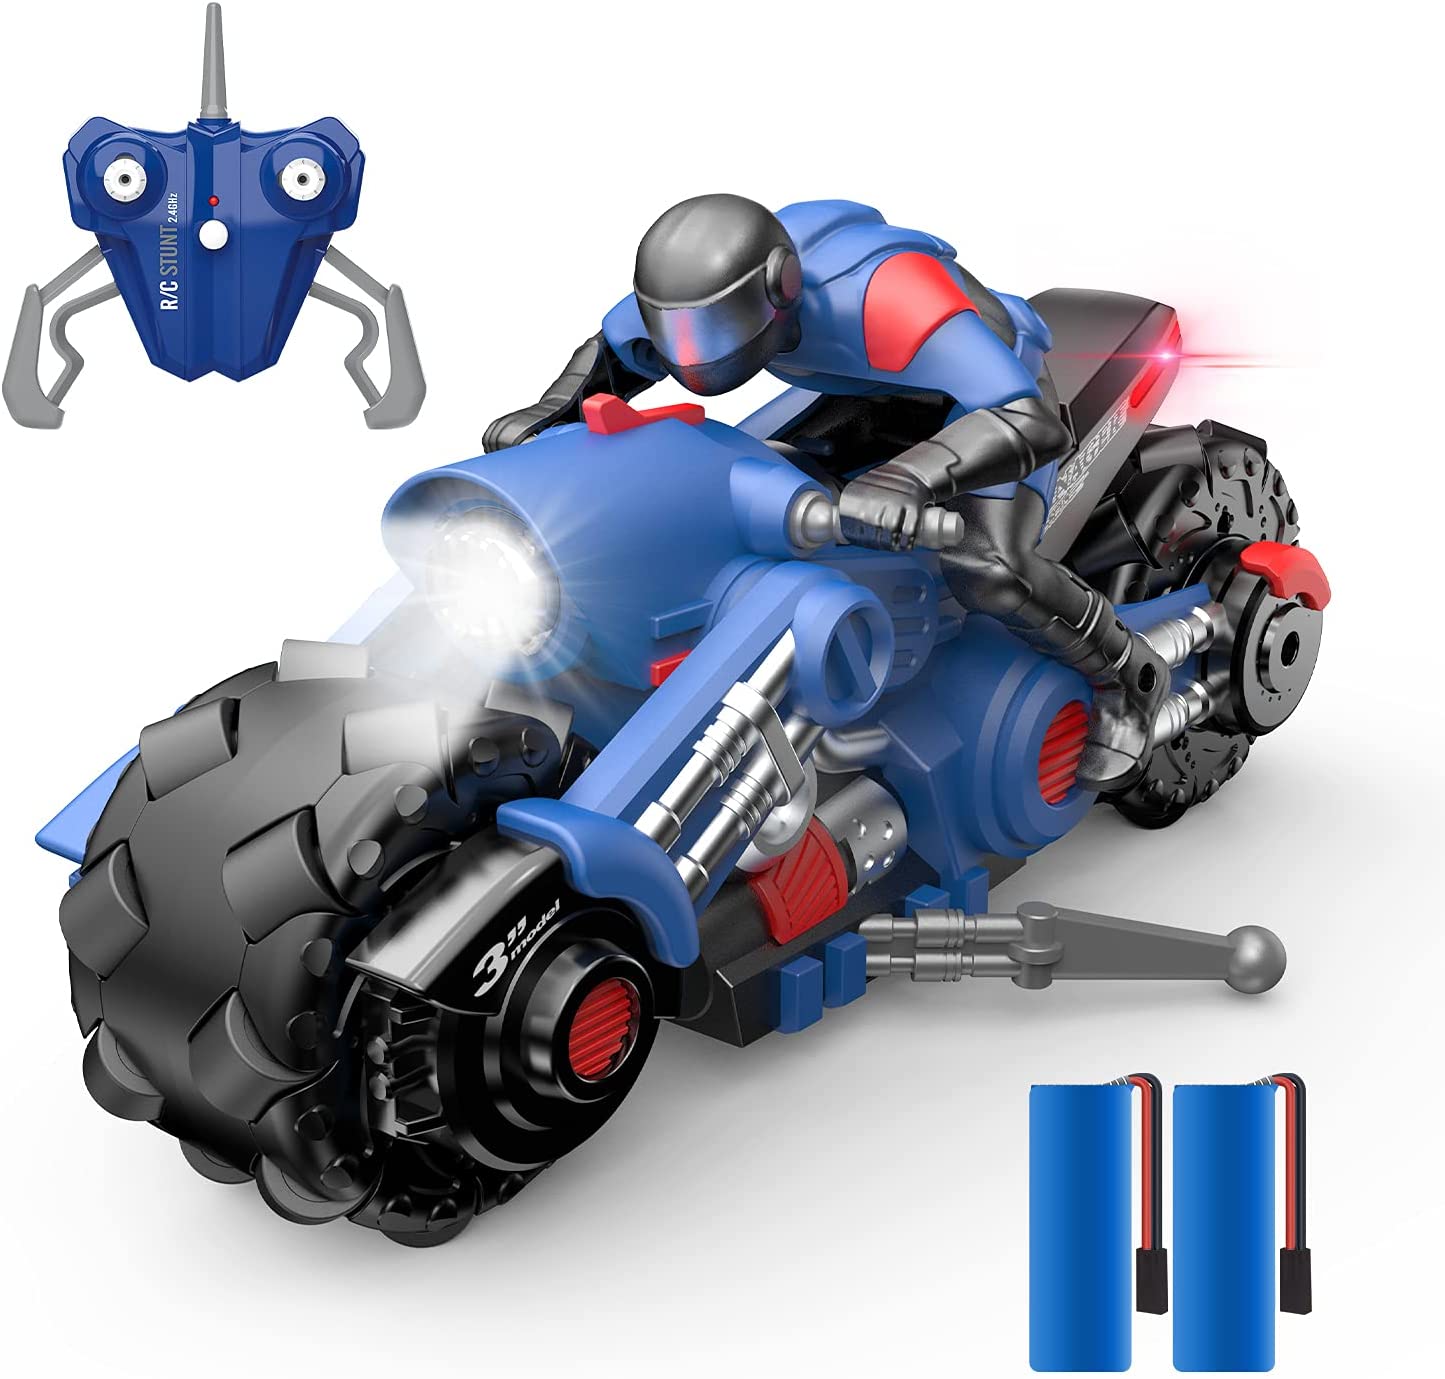 バイク ラジコンカー こども向け スタントカー リモコンカー バイク おもちゃ ライトモード フォグストリーム 1/14 使用時間80分 2.4GHz無線 おもちゃ プレゼント 贈り物